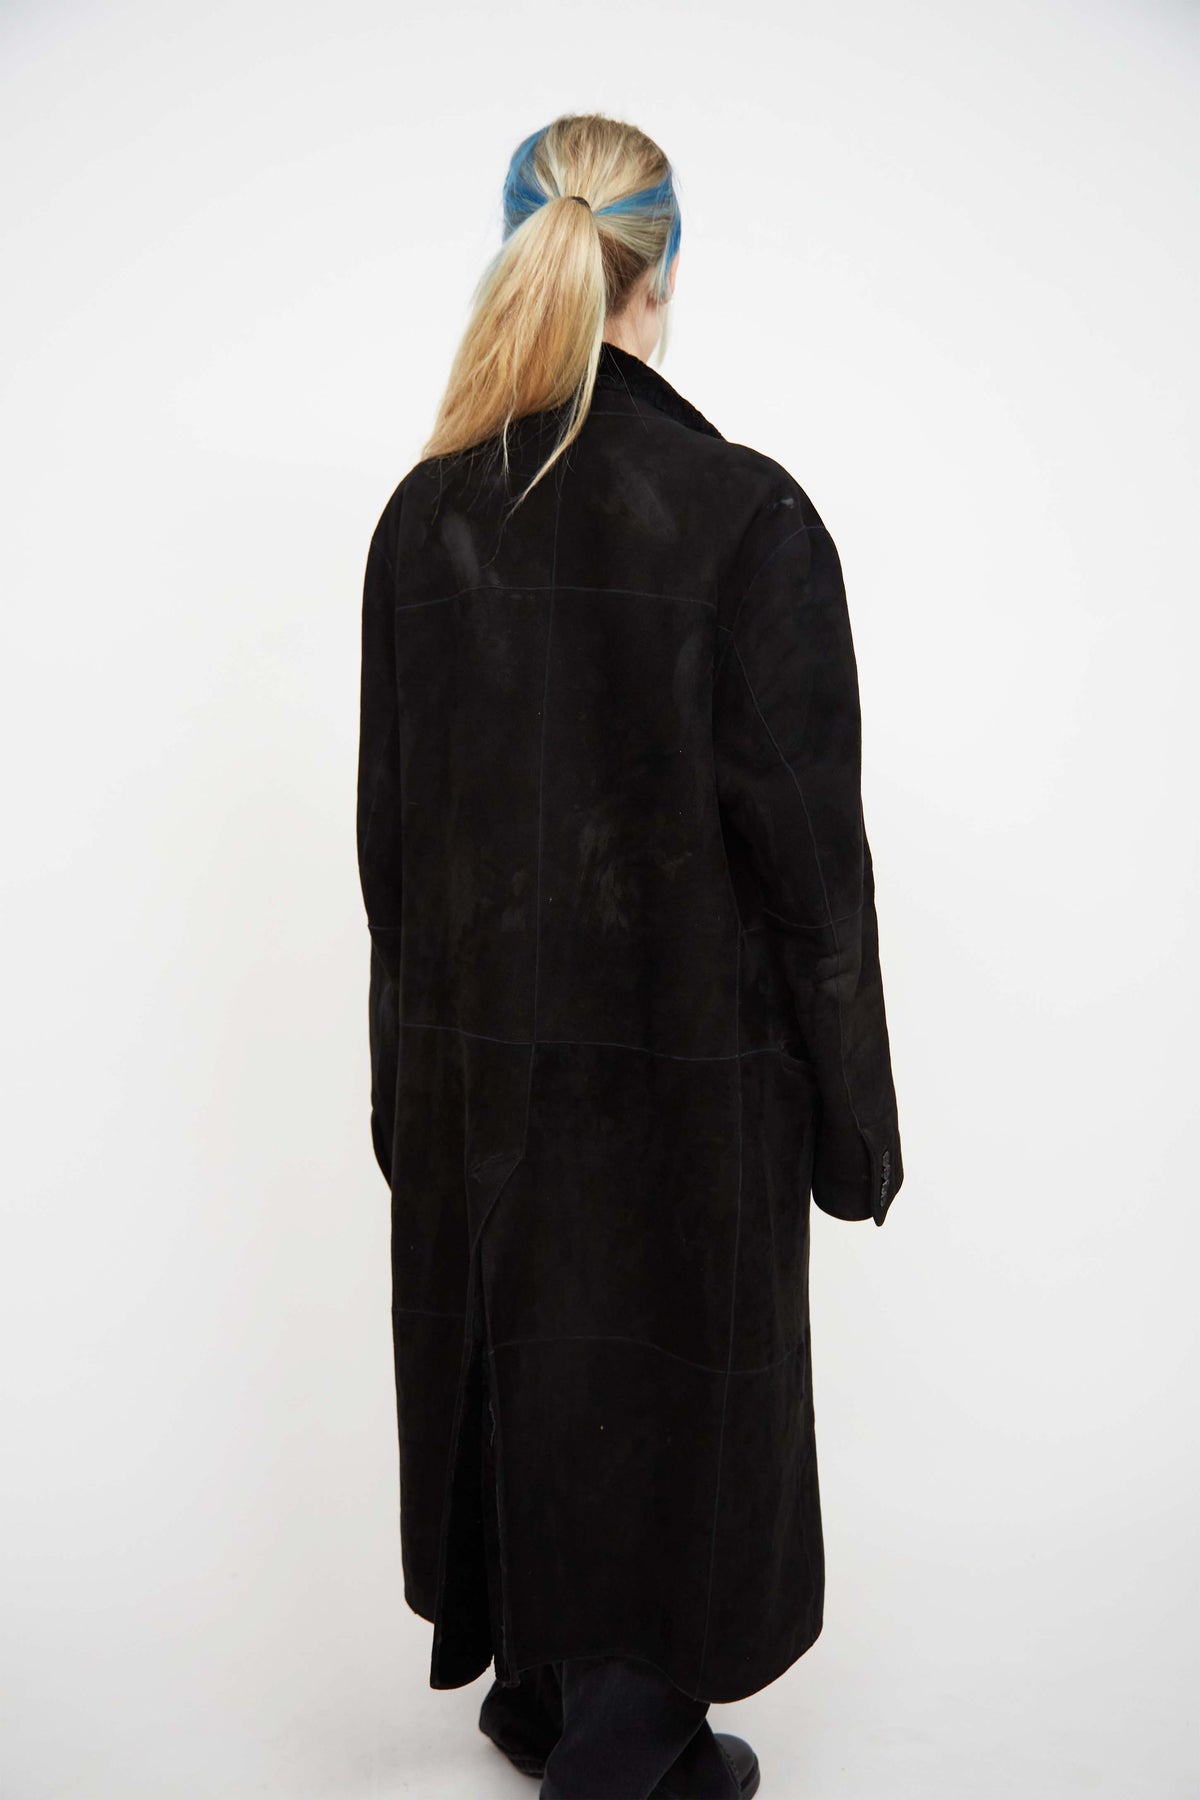 Gianni Versace shearling coat